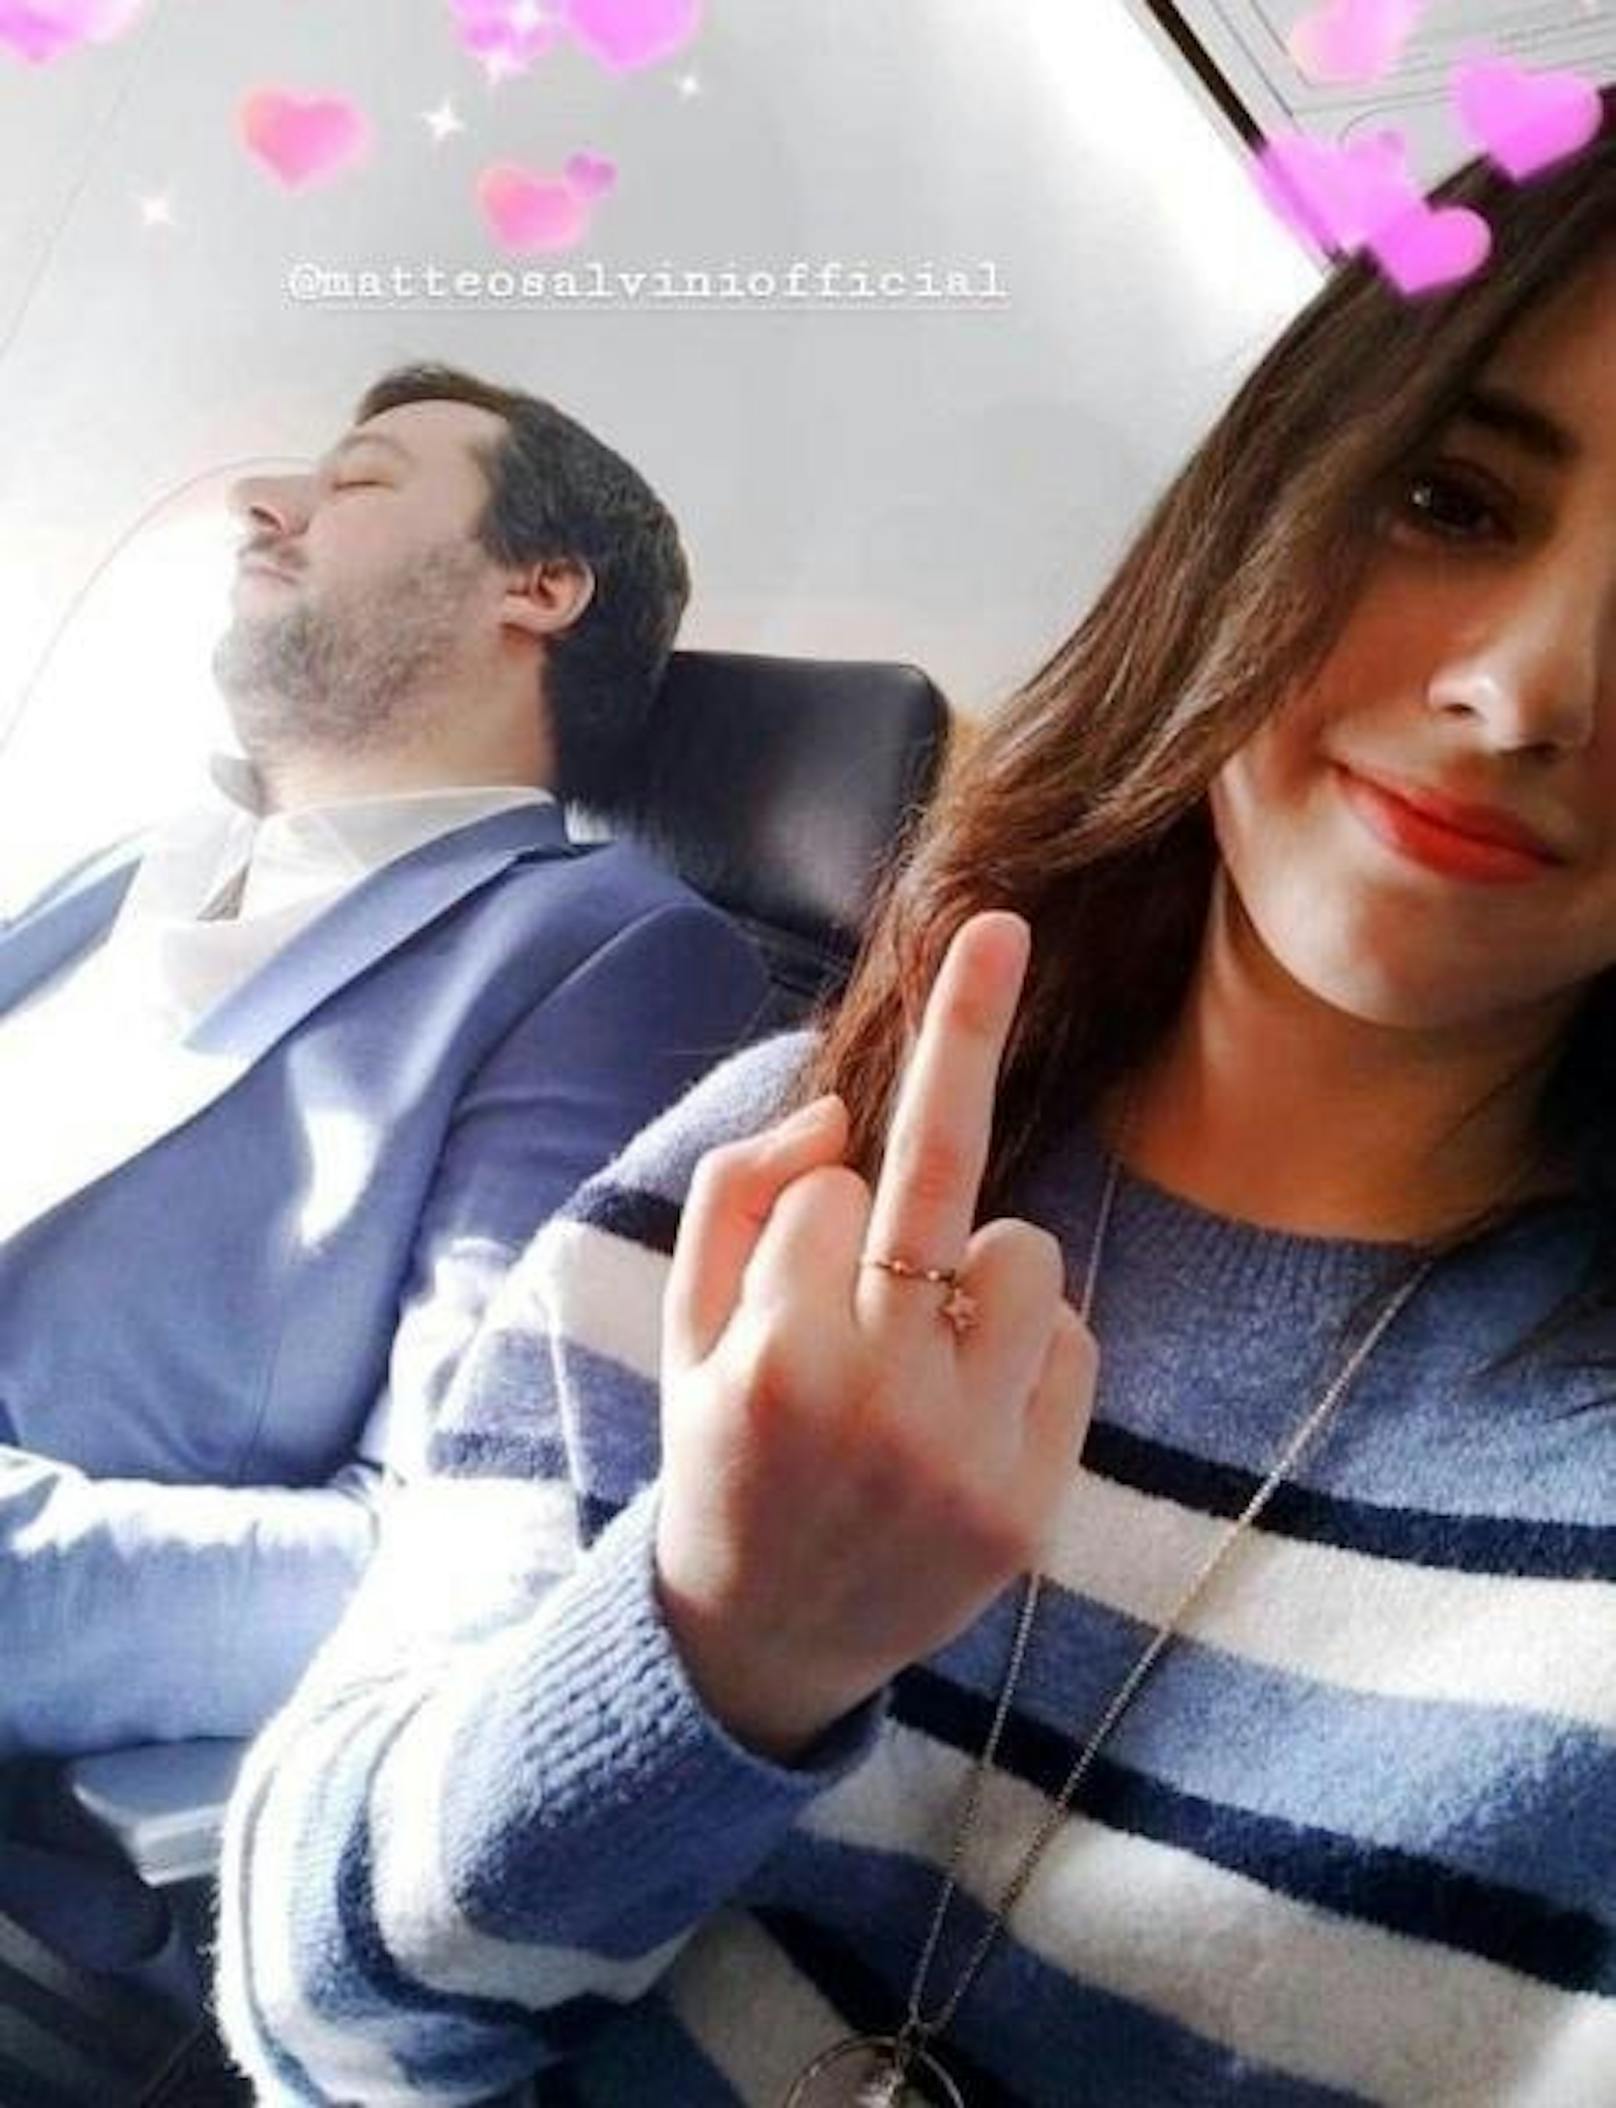 E. L. und der ehemalige Innenminister Matteo Salvini saßen am 18. Dezember 2019 nebeneinander in einem Billigflug von Bari nach Milano. Die 19-Jährige posierte mit erhobenem Finger und machte ein Selfie.